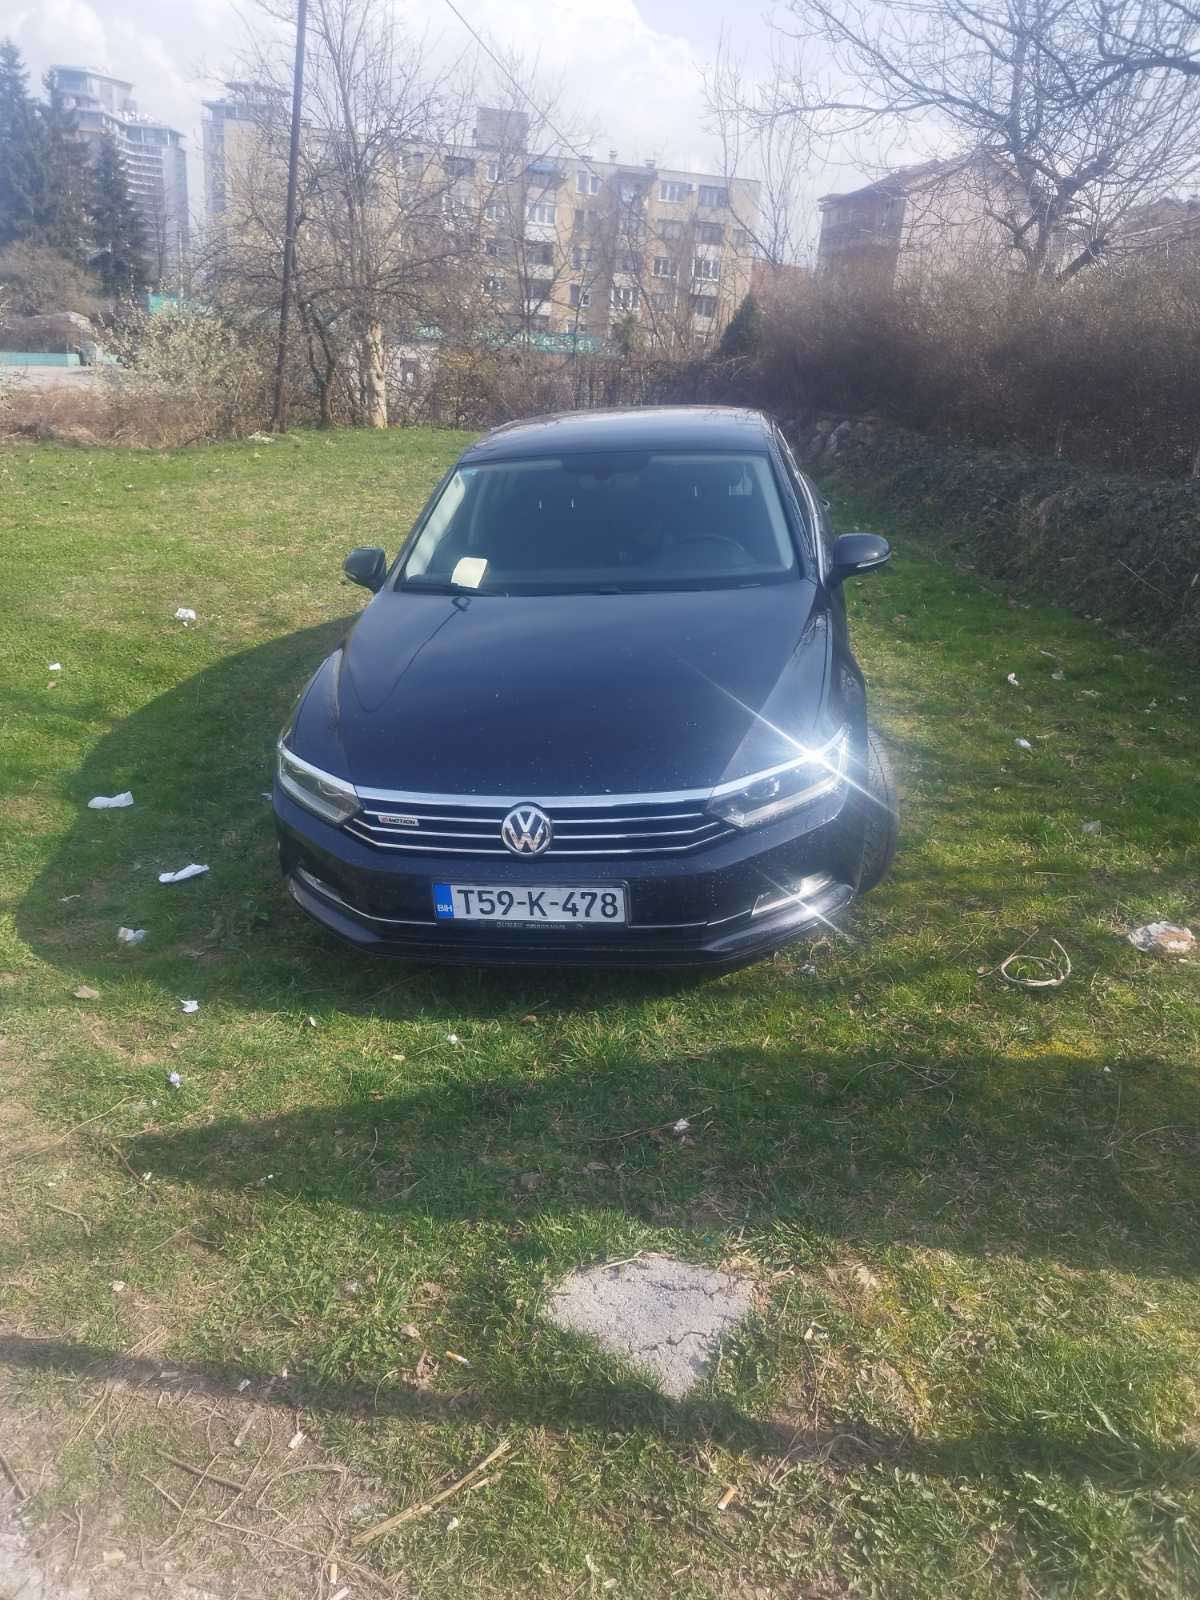 Načelnik Gacka Ognjen Milinković išao u Sarajevo da brani Dodika pa ostao bez auta